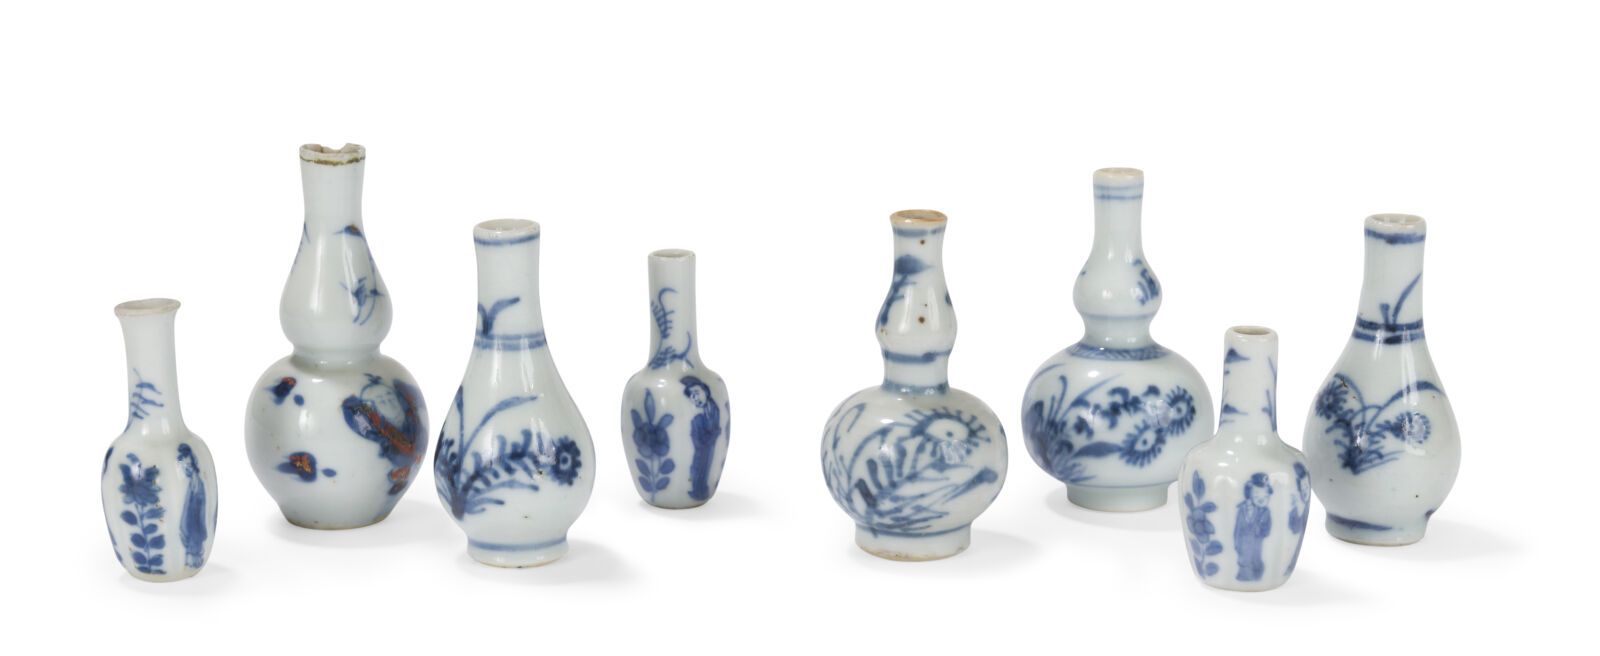 Null 十四件青花瓷微型花瓶
中国，康熙时期（1662-1722年）
其中六件为双葫芦形，饰以妇女和各种花卉；小事故
H.从4,8到7,8厘米

狀況報告:
&hellip;